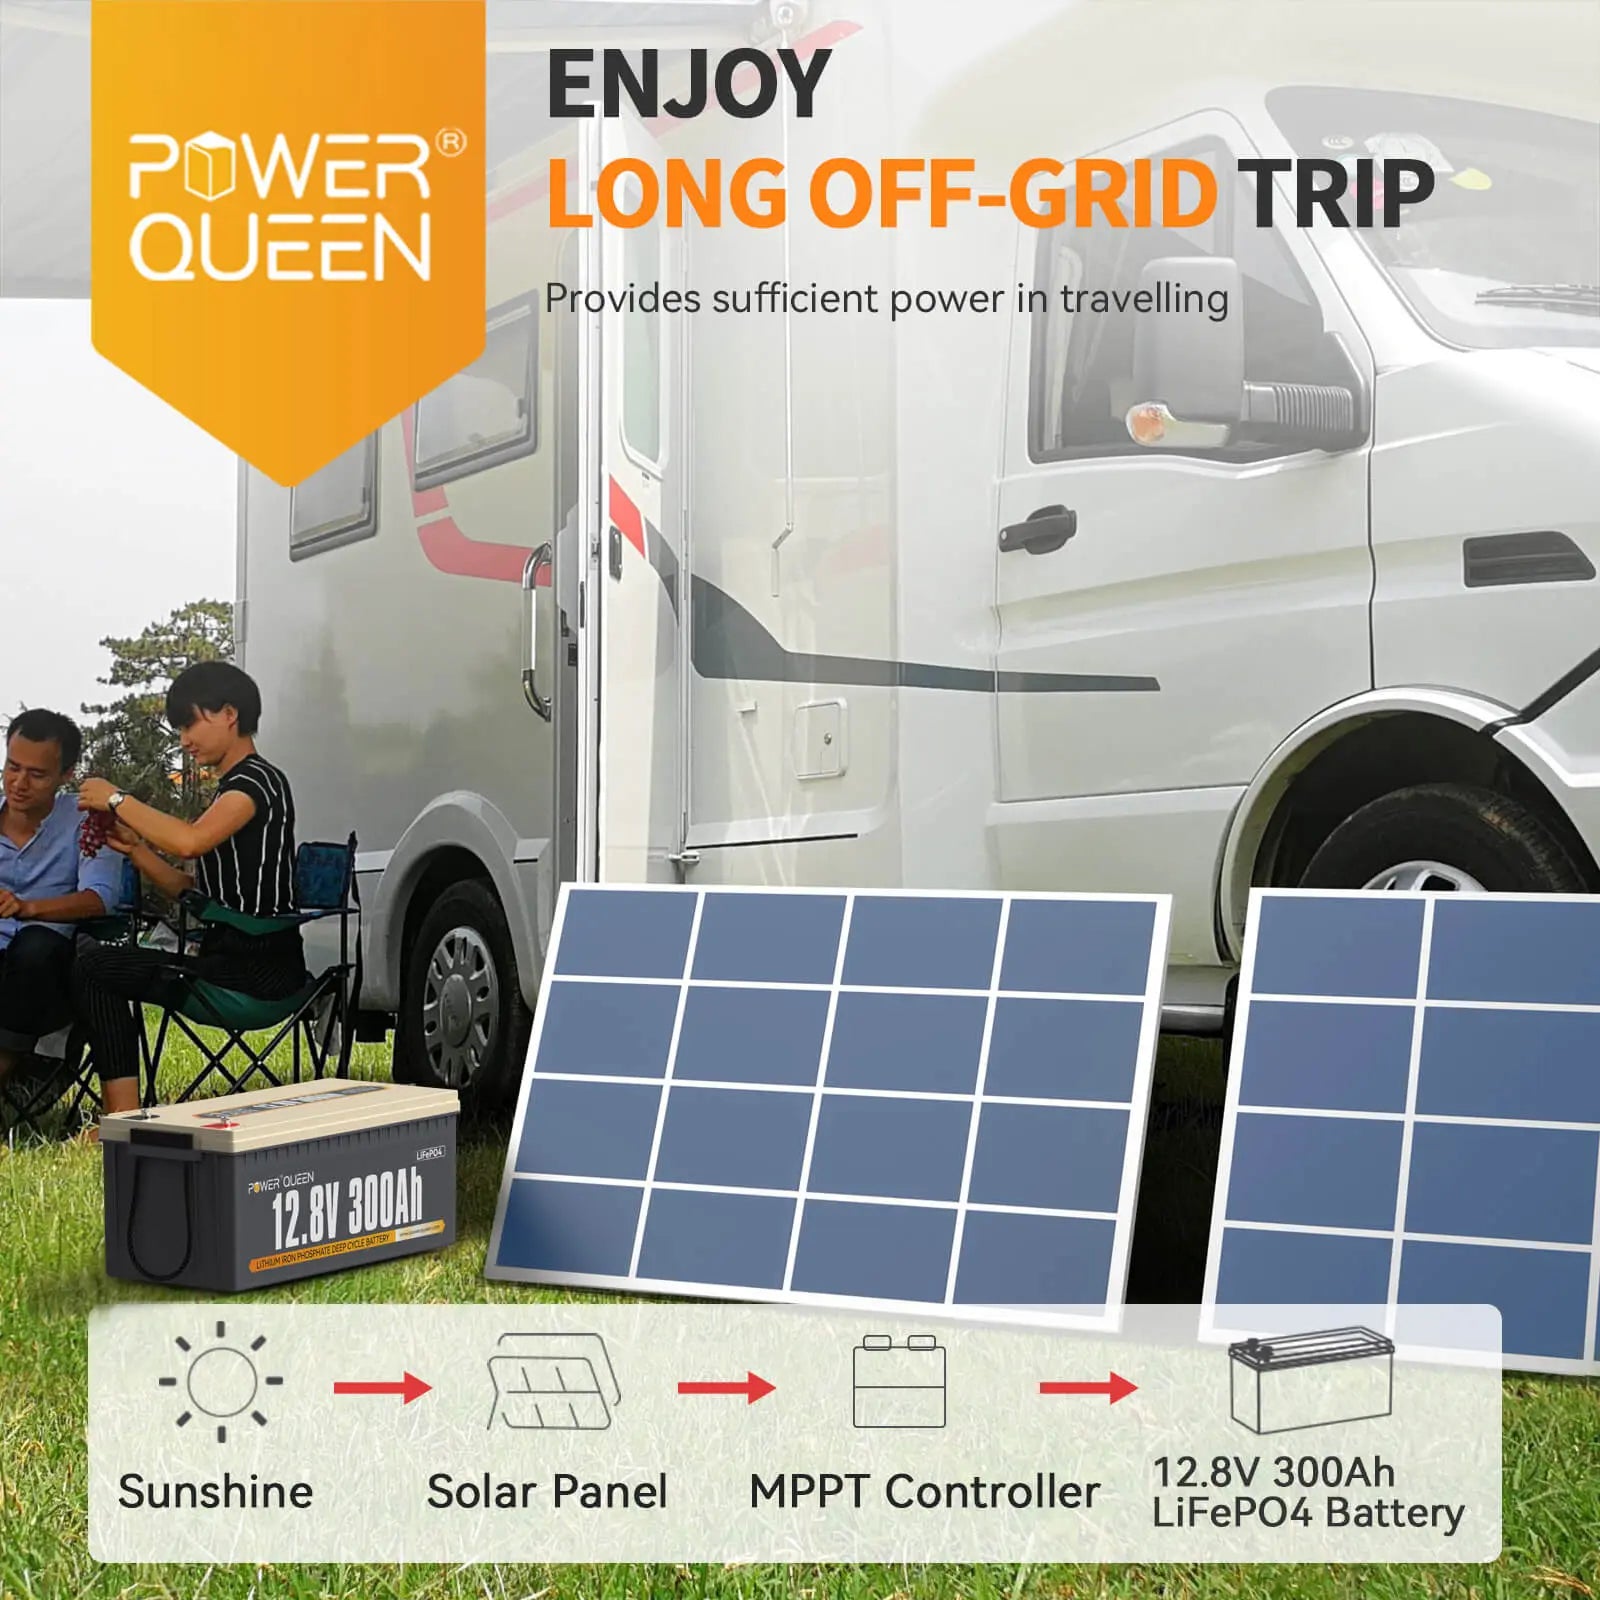 Power Queen 12.8V 300Ah LiFePO4 Battery, Built-in 200A BMS Power Queen